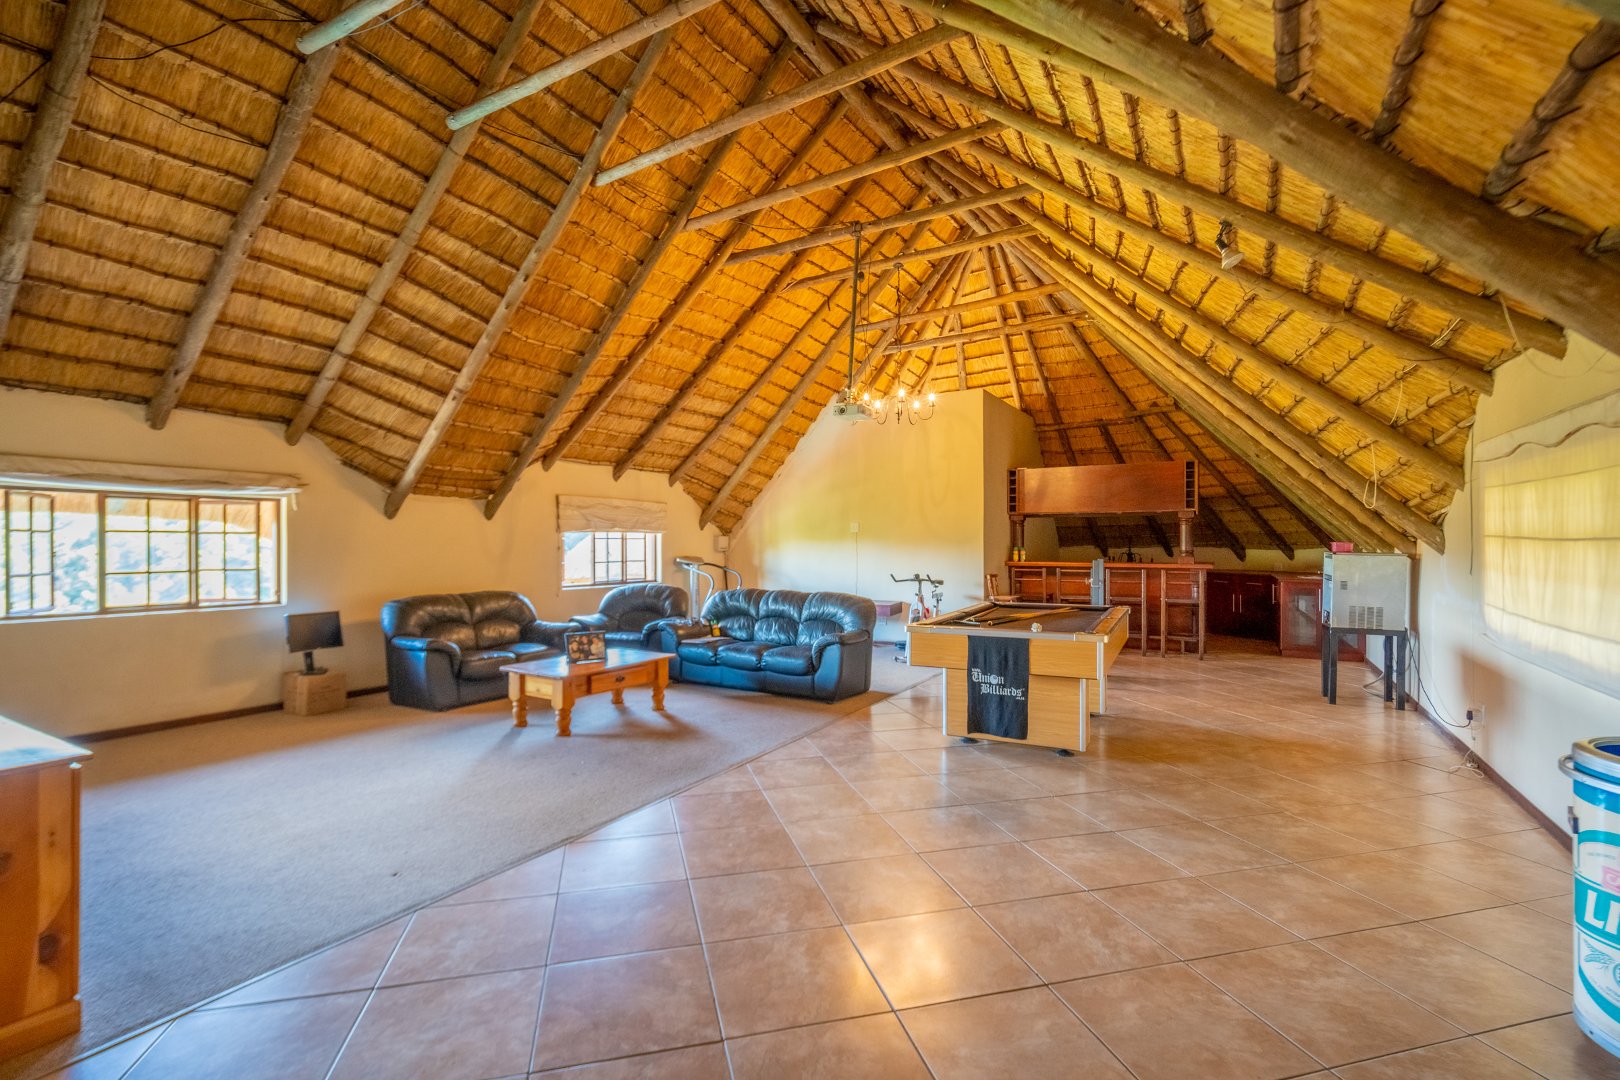 4 Bedroom Property for Sale in Monteseel KwaZulu-Natal